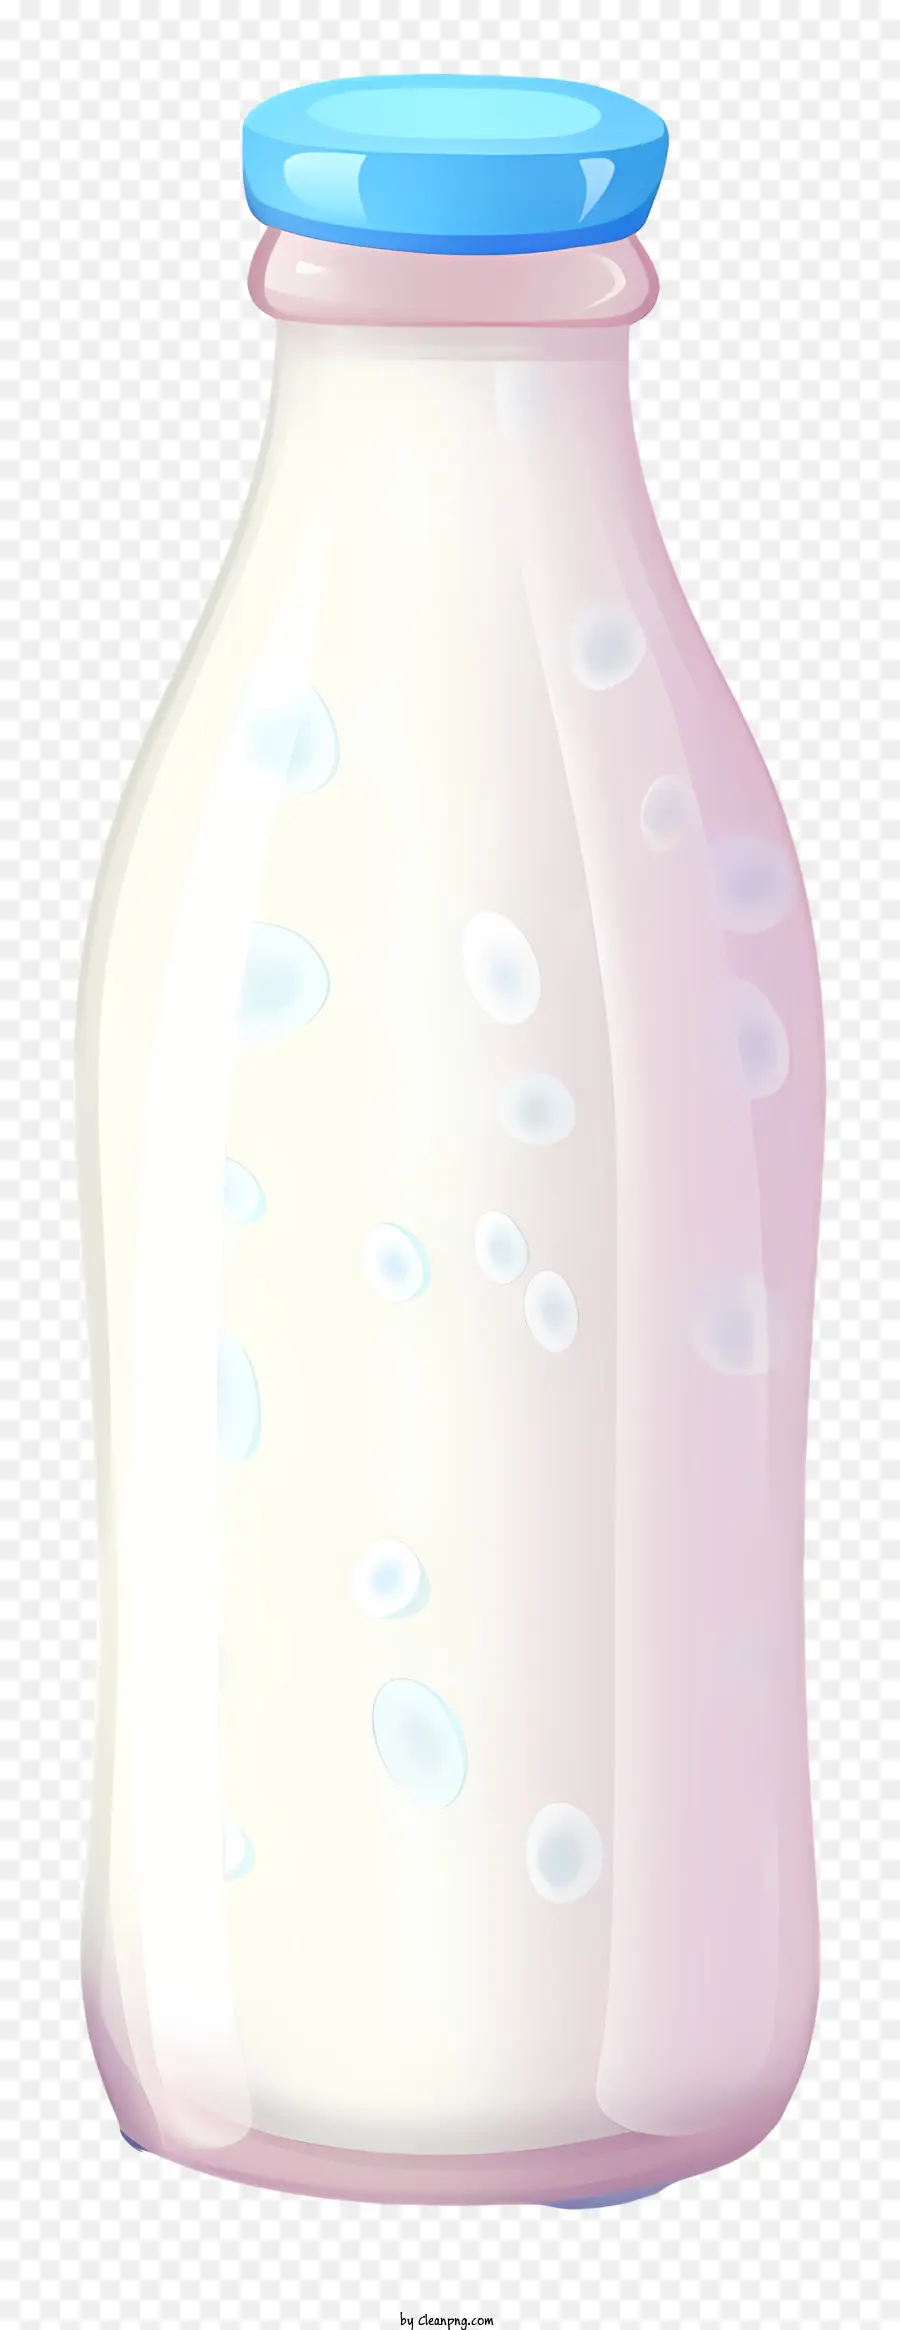 chai nhựa - Sữa trong chai nhựa có nắp màu xanh